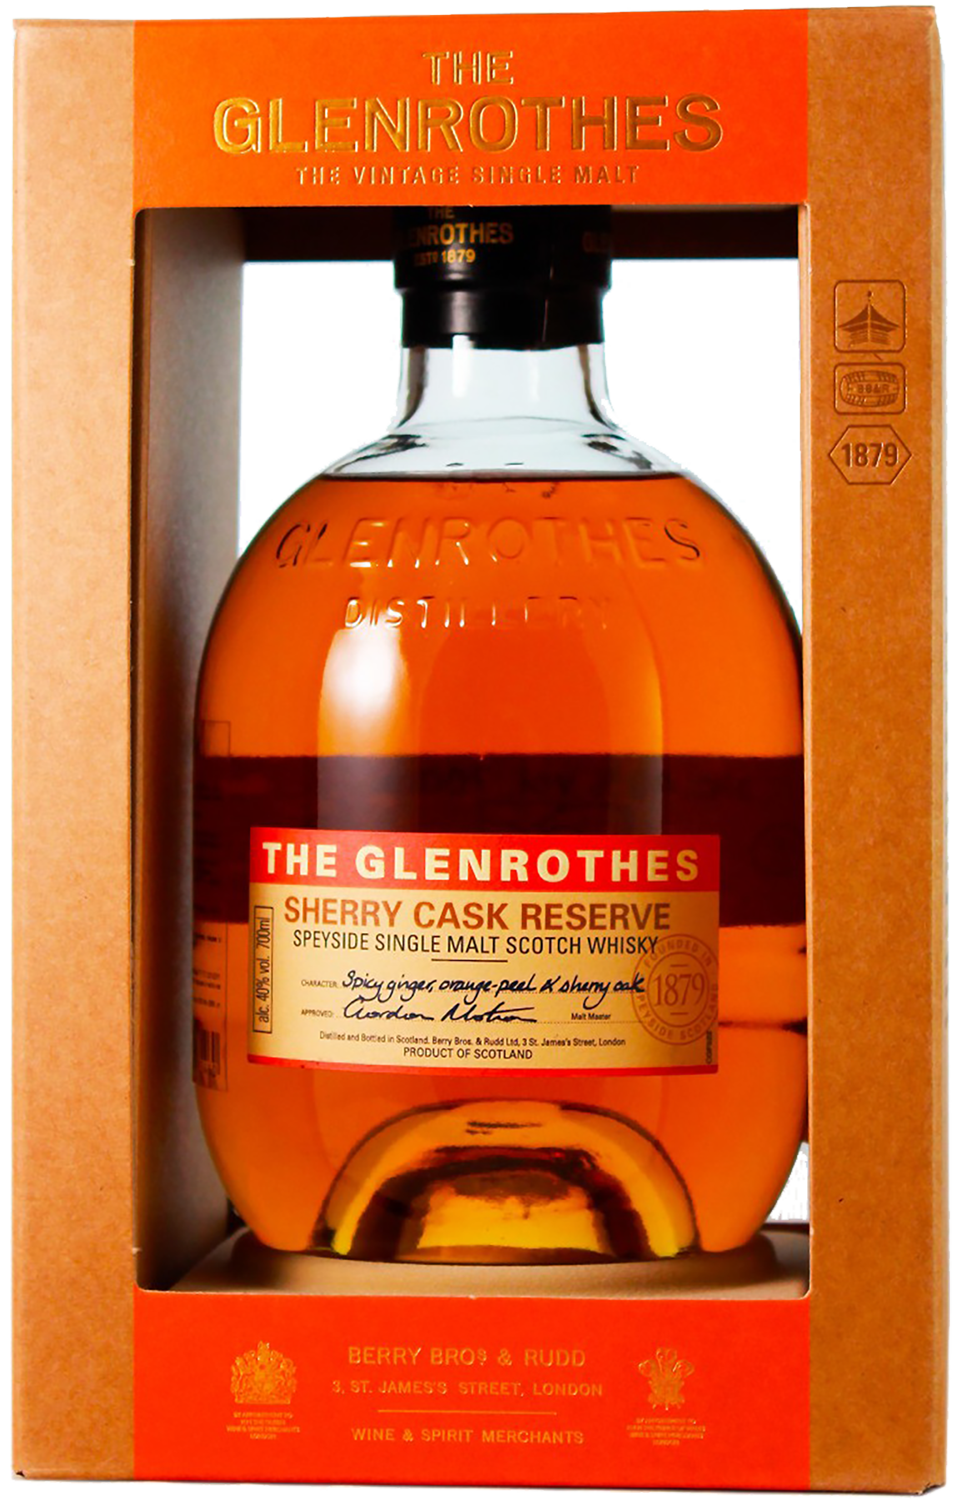 The Glenrothes Sherry Cask Reserve Speyside Single Malt Scotch Whisky(gift box) wemyss malts triptych of treats linkwood 1995 speyside single cask single malt scotch whisky 23 y o gift box